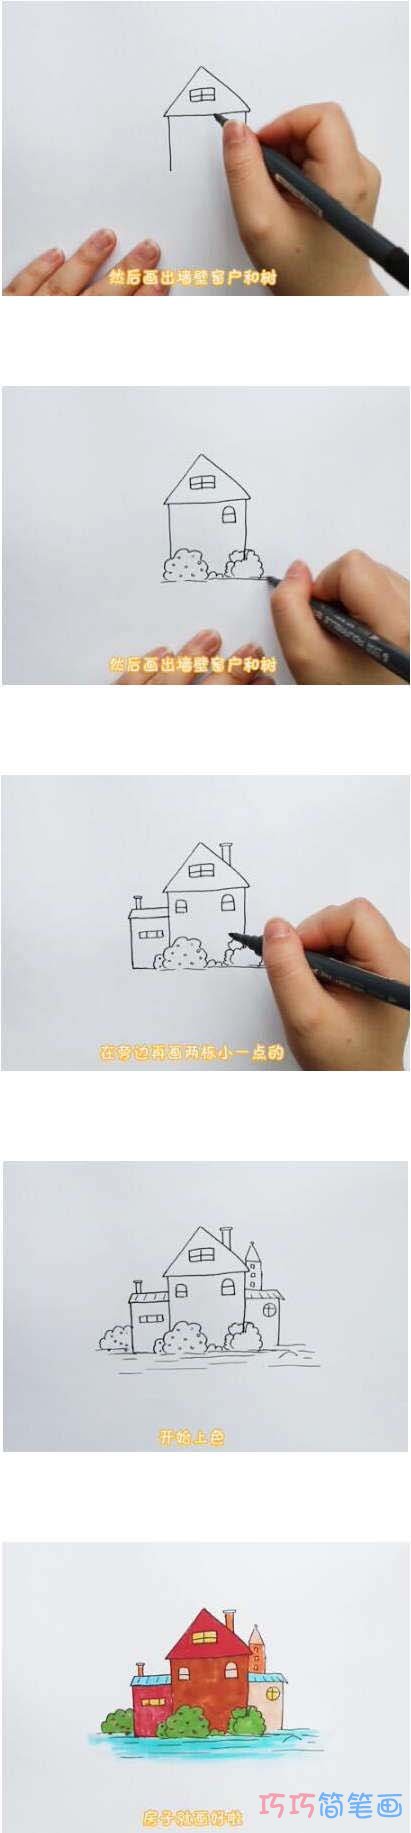 漂亮小房子简笔画画法步骤教程涂颜色